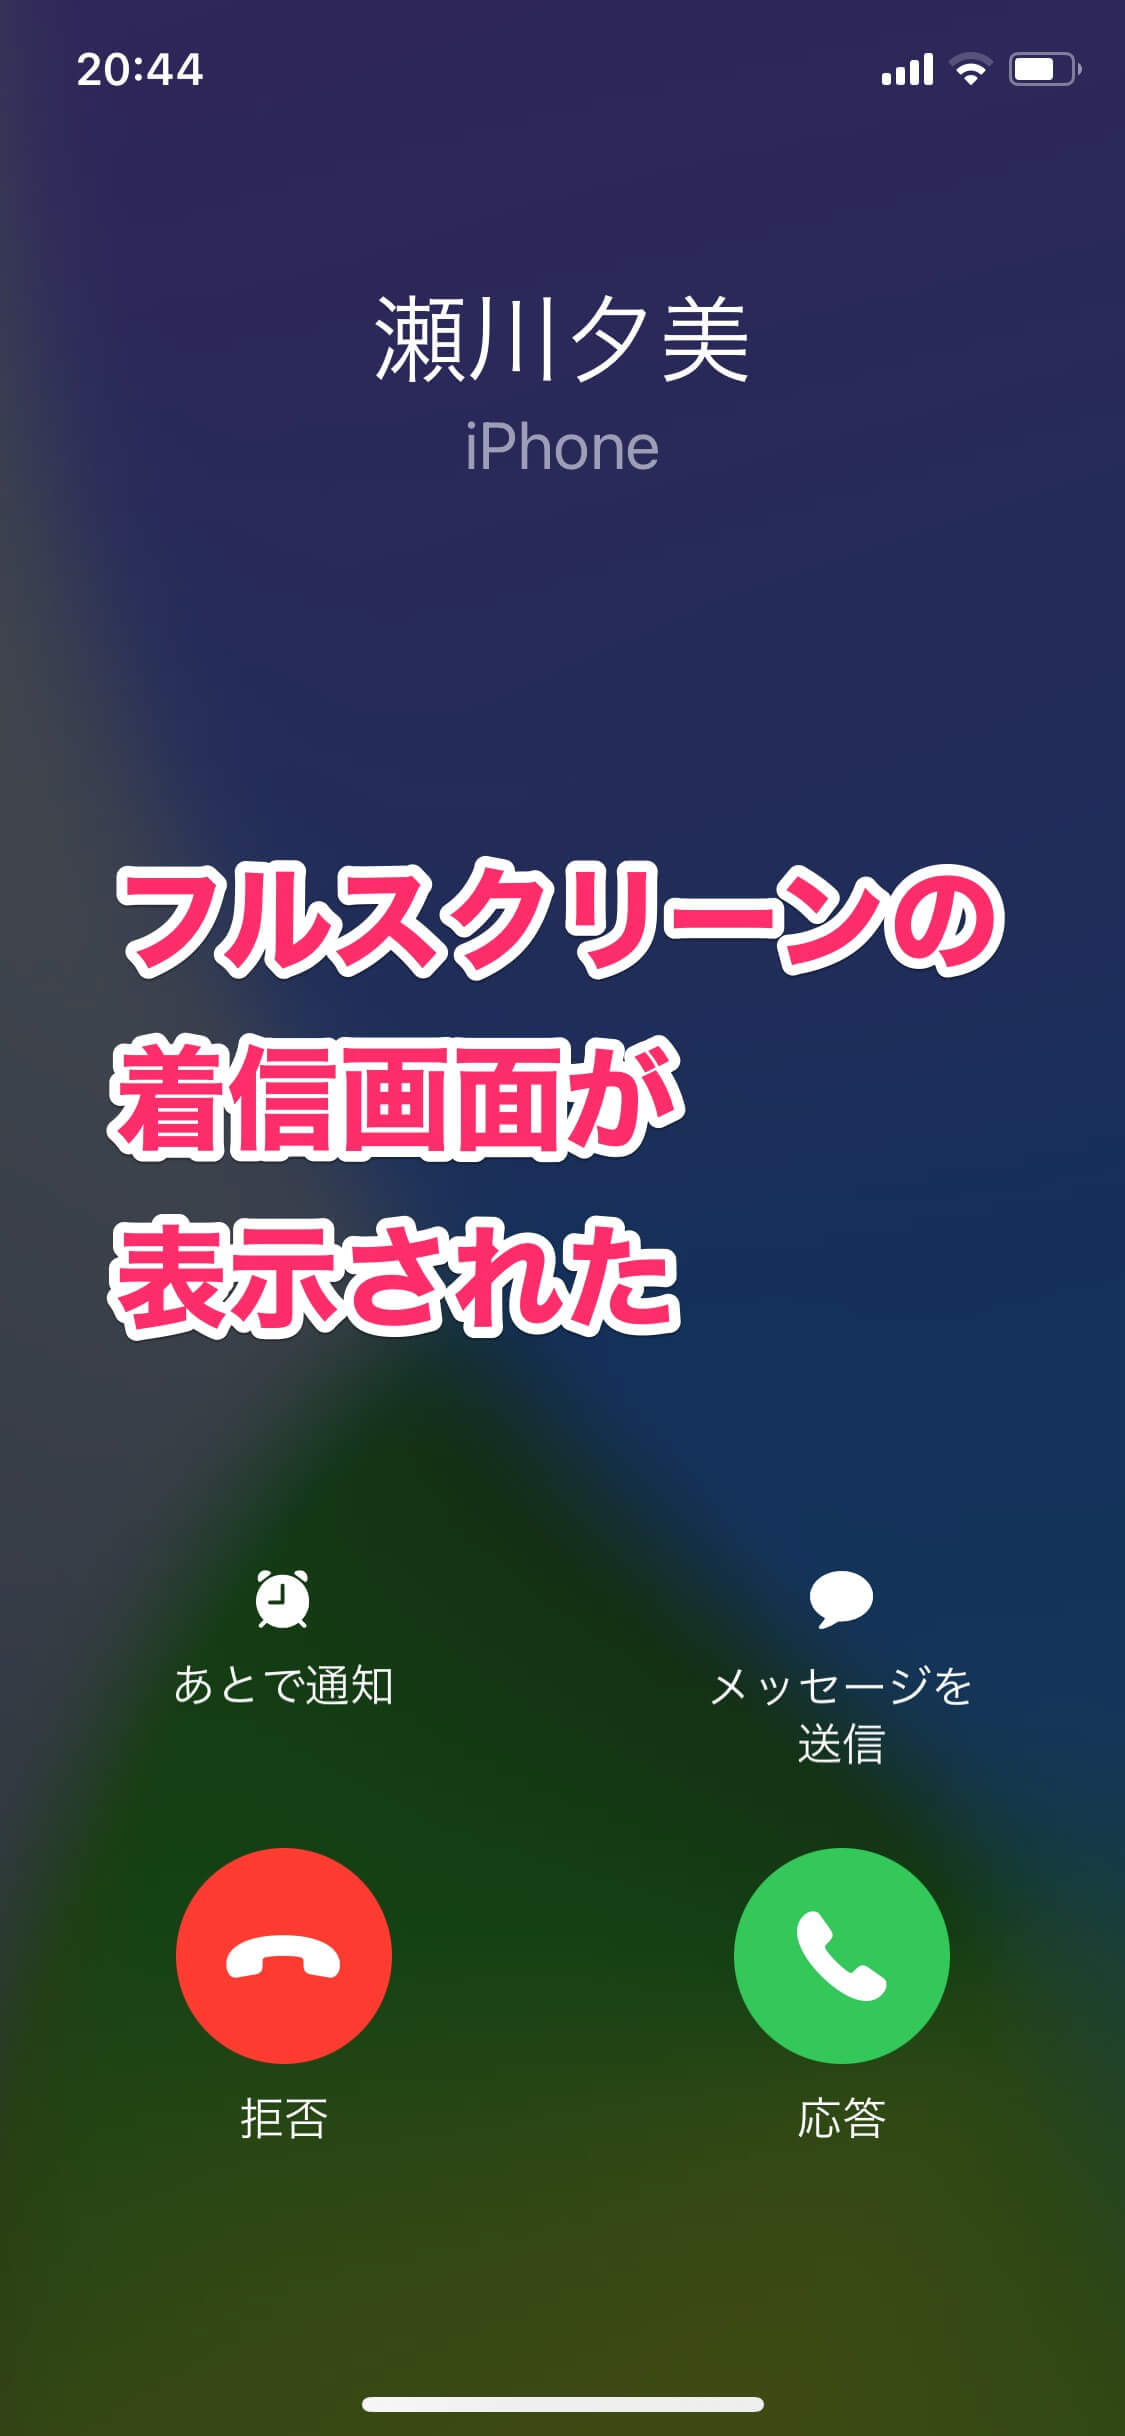 【iOS 14】電話の通知が小さくなった!? 元に戻すには着信の設定を「フルスクリーン」に